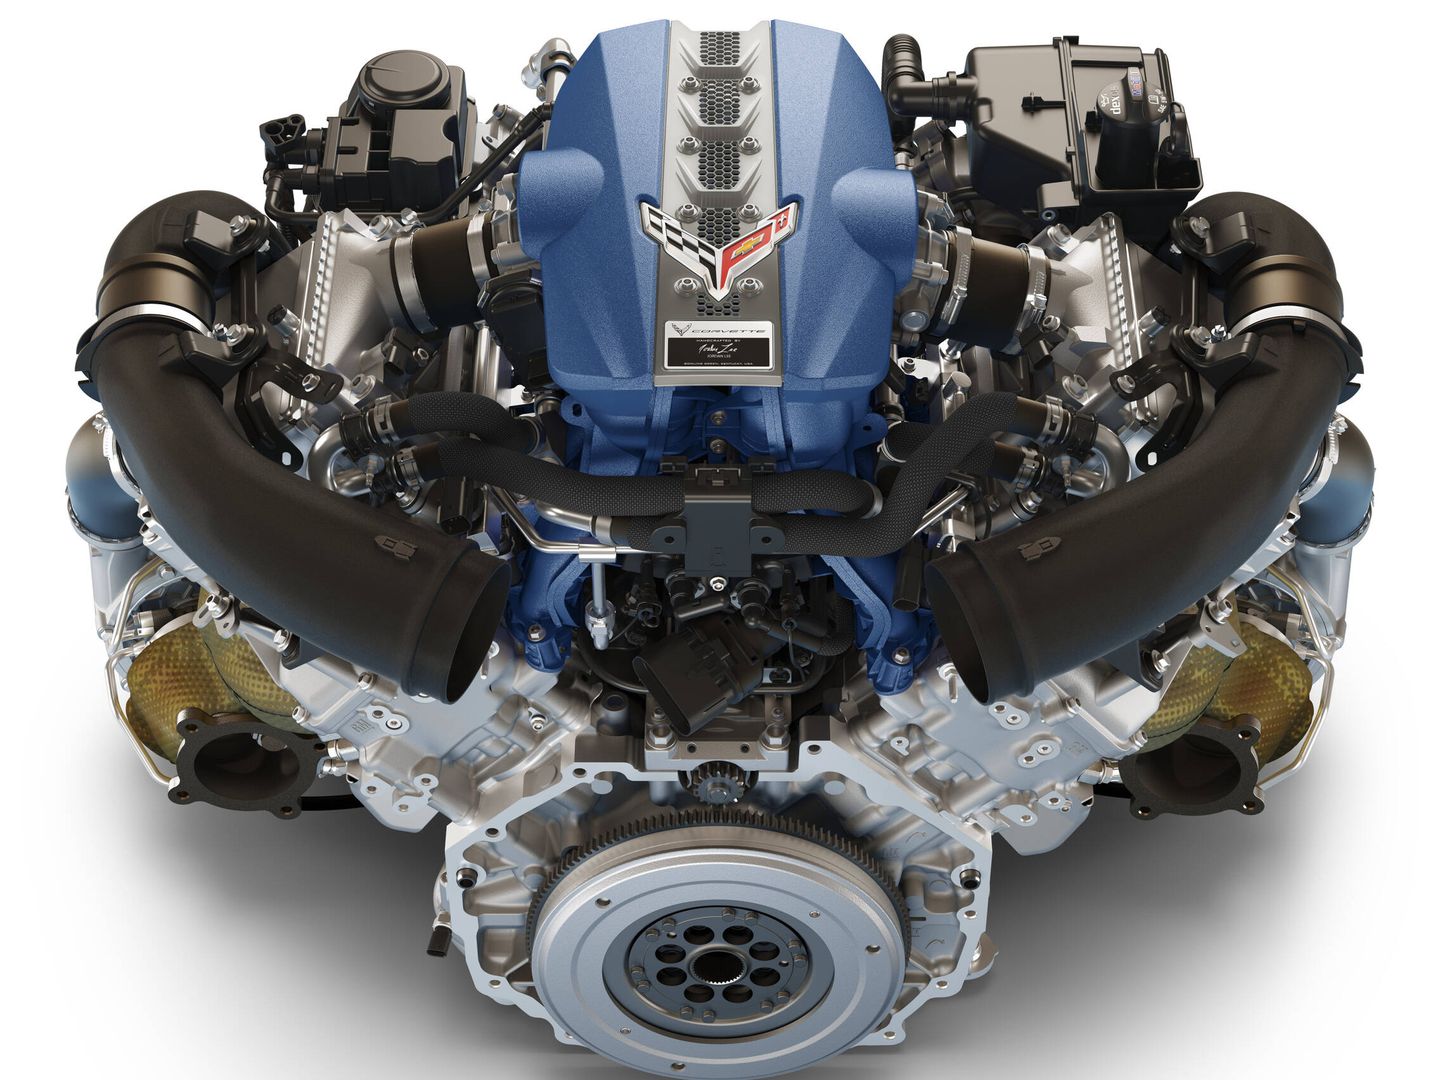 El motor V8 utilizado es el más potente jamás producido en Estados Unidos.